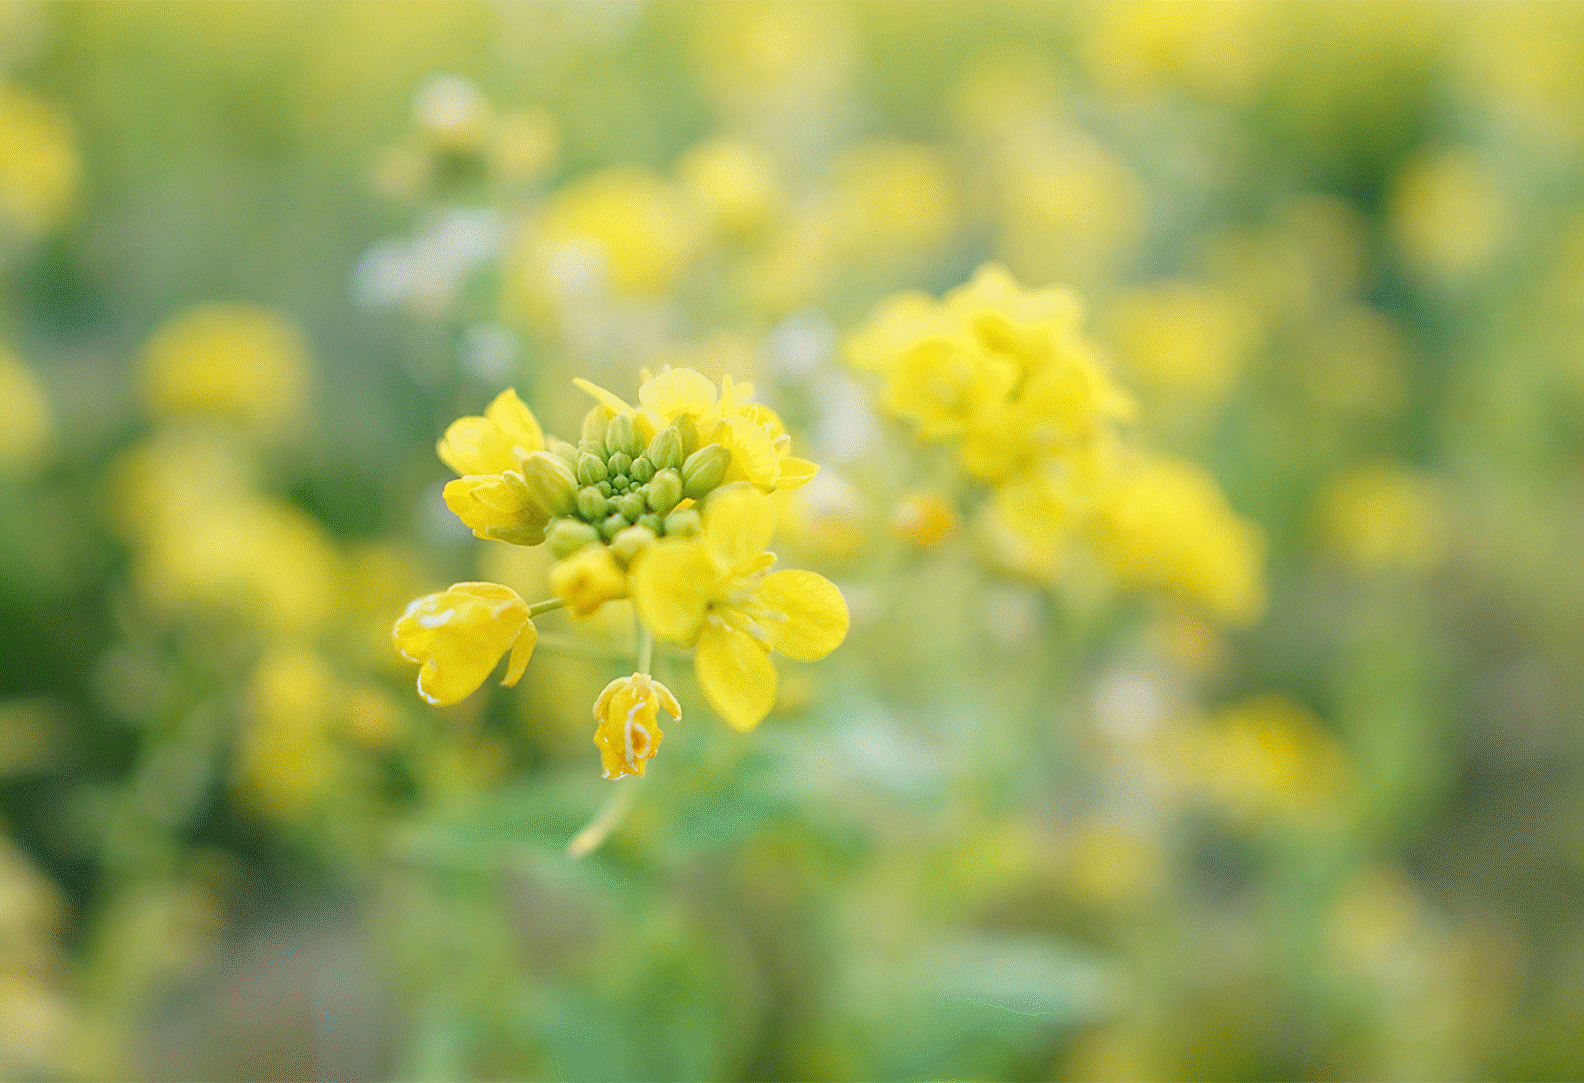 Bild von gelben Blumen